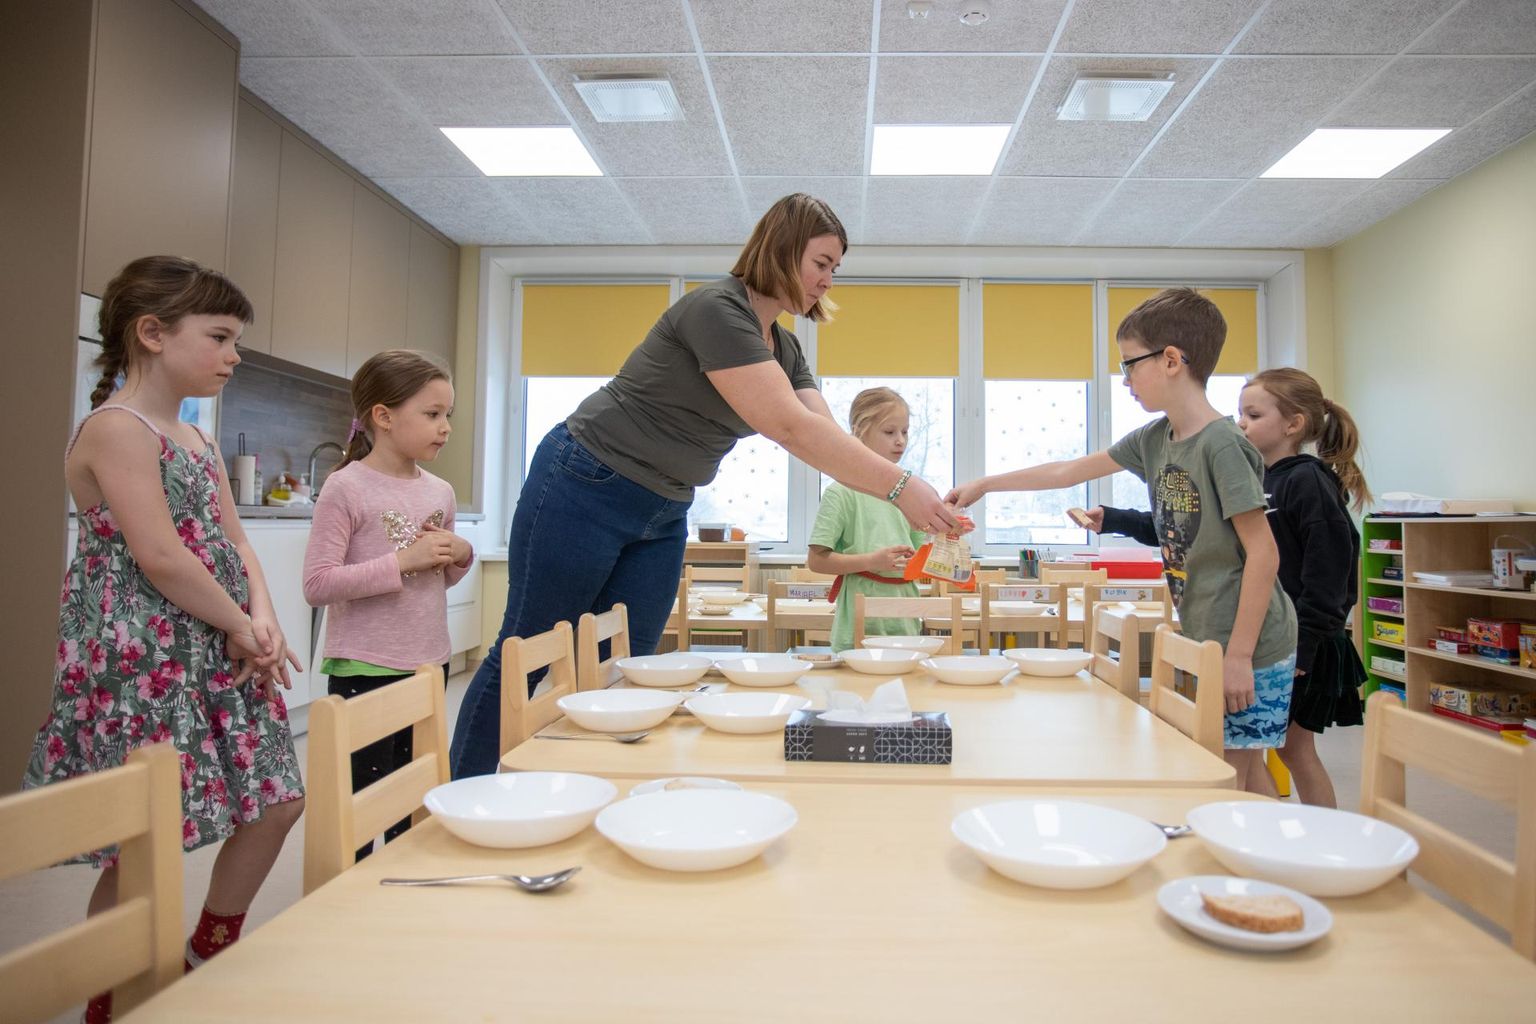 Õpetaja abi Triin Mägi juhtimisel aitasid Suure-Jaani lasteaia vast valminud rühmaruumis lapsed teisipäeva lõunaks lauda katta.